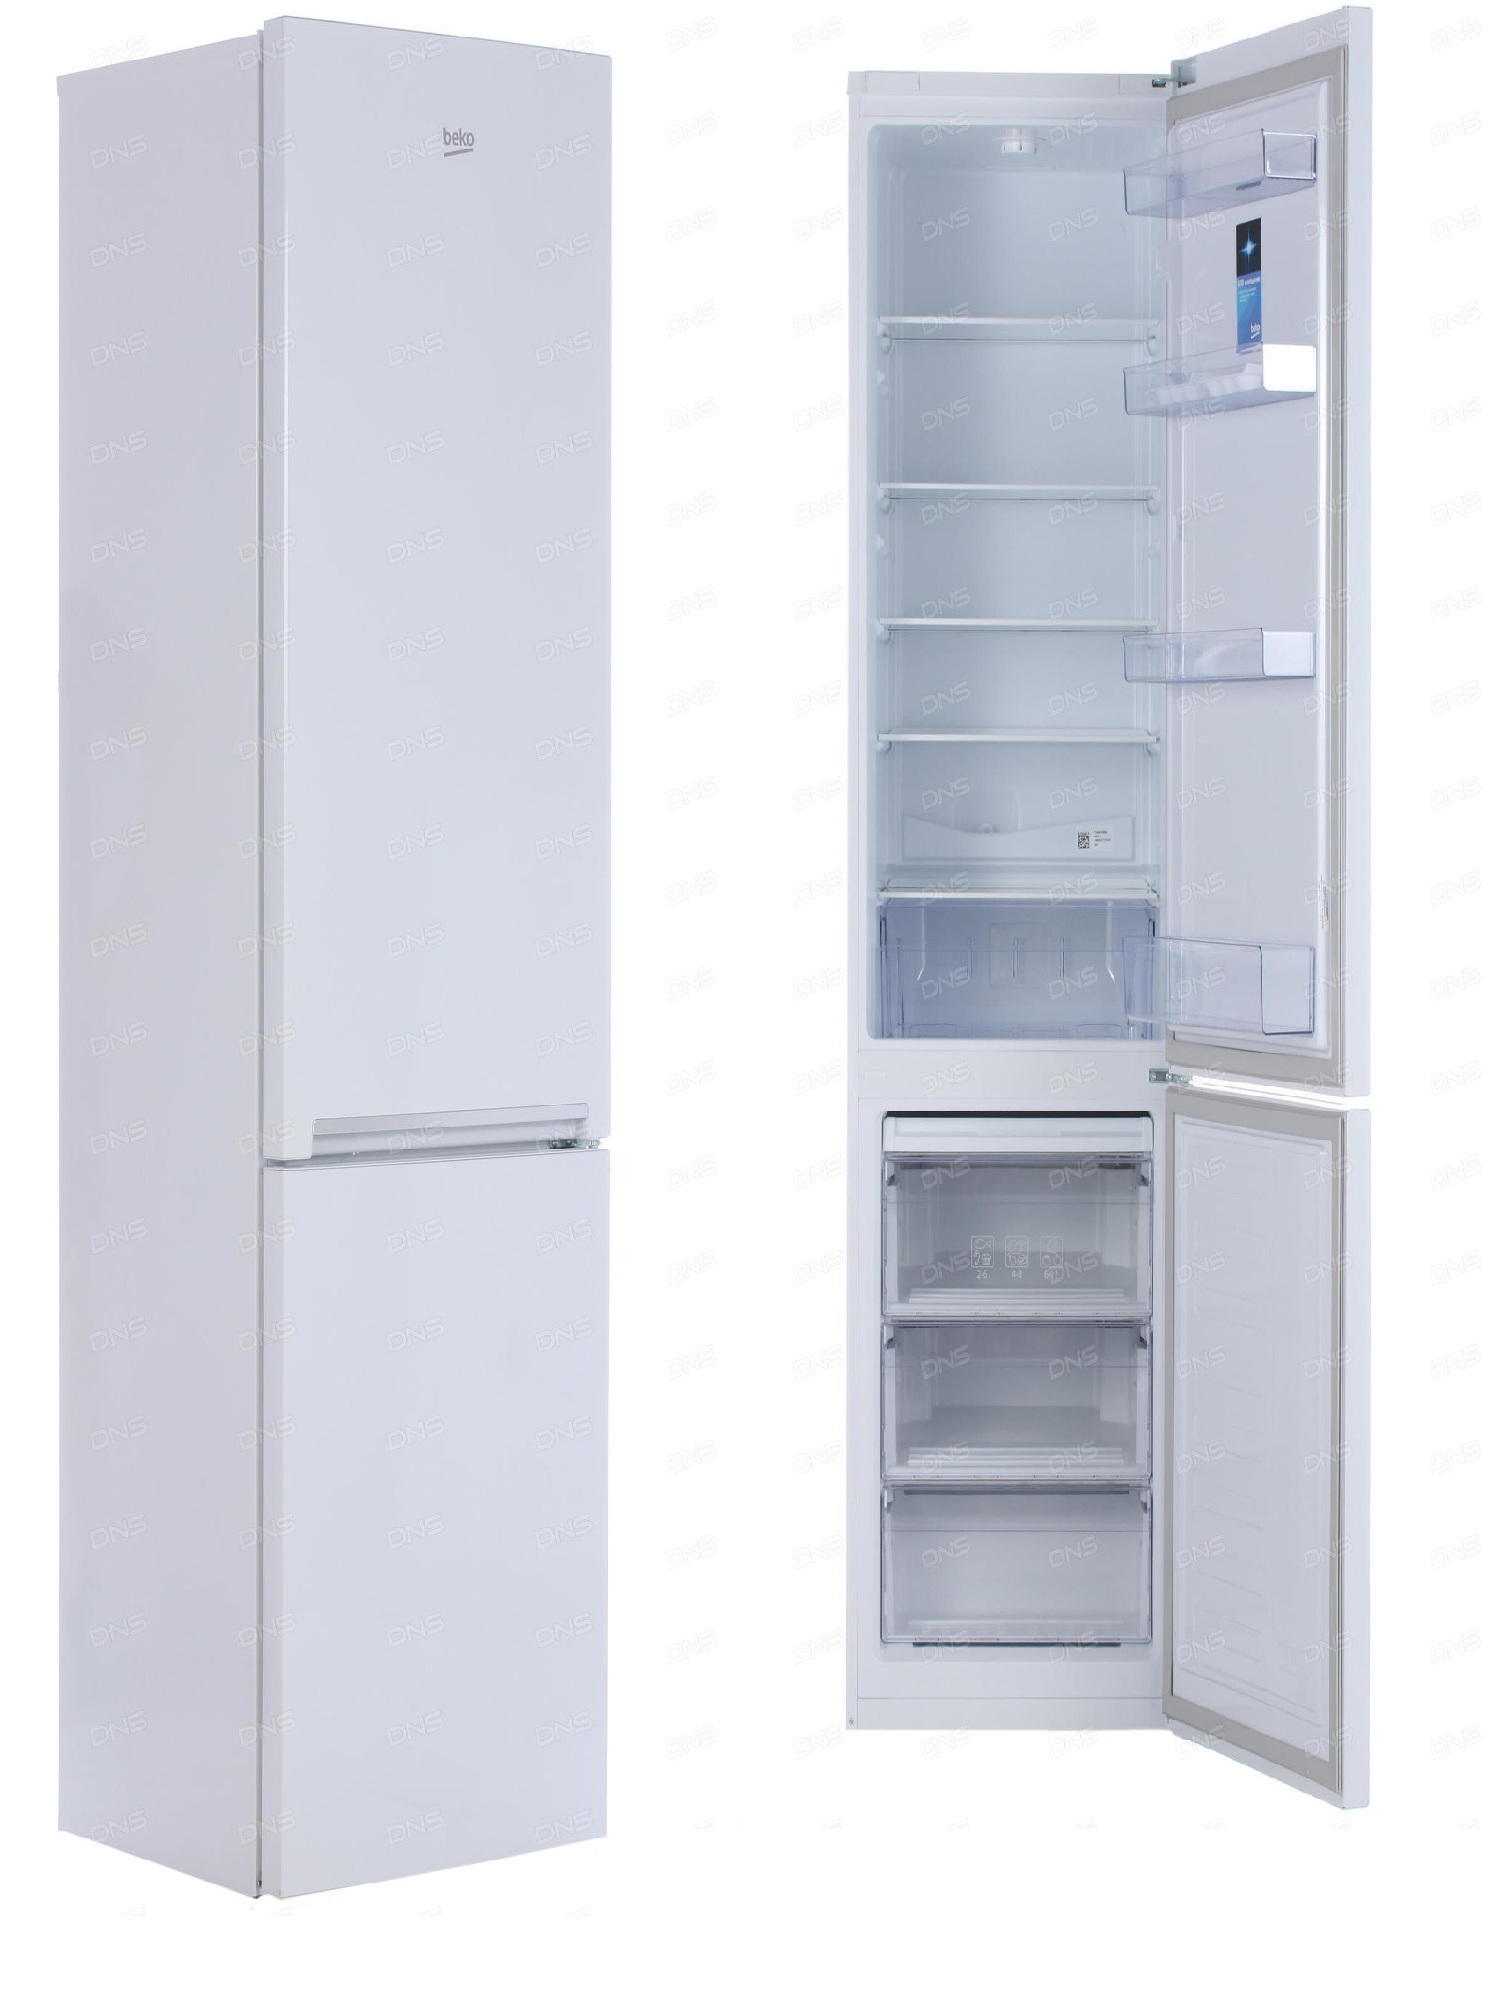 холодильник beko rcsk 379m21, купить в Красноярске холодильник beko rcsk 379m21,  купить в Красноярске дешево холодильник beko rcsk 379m21, купить в Красноярске минимальной цене холодильник beko rcsk 379m21